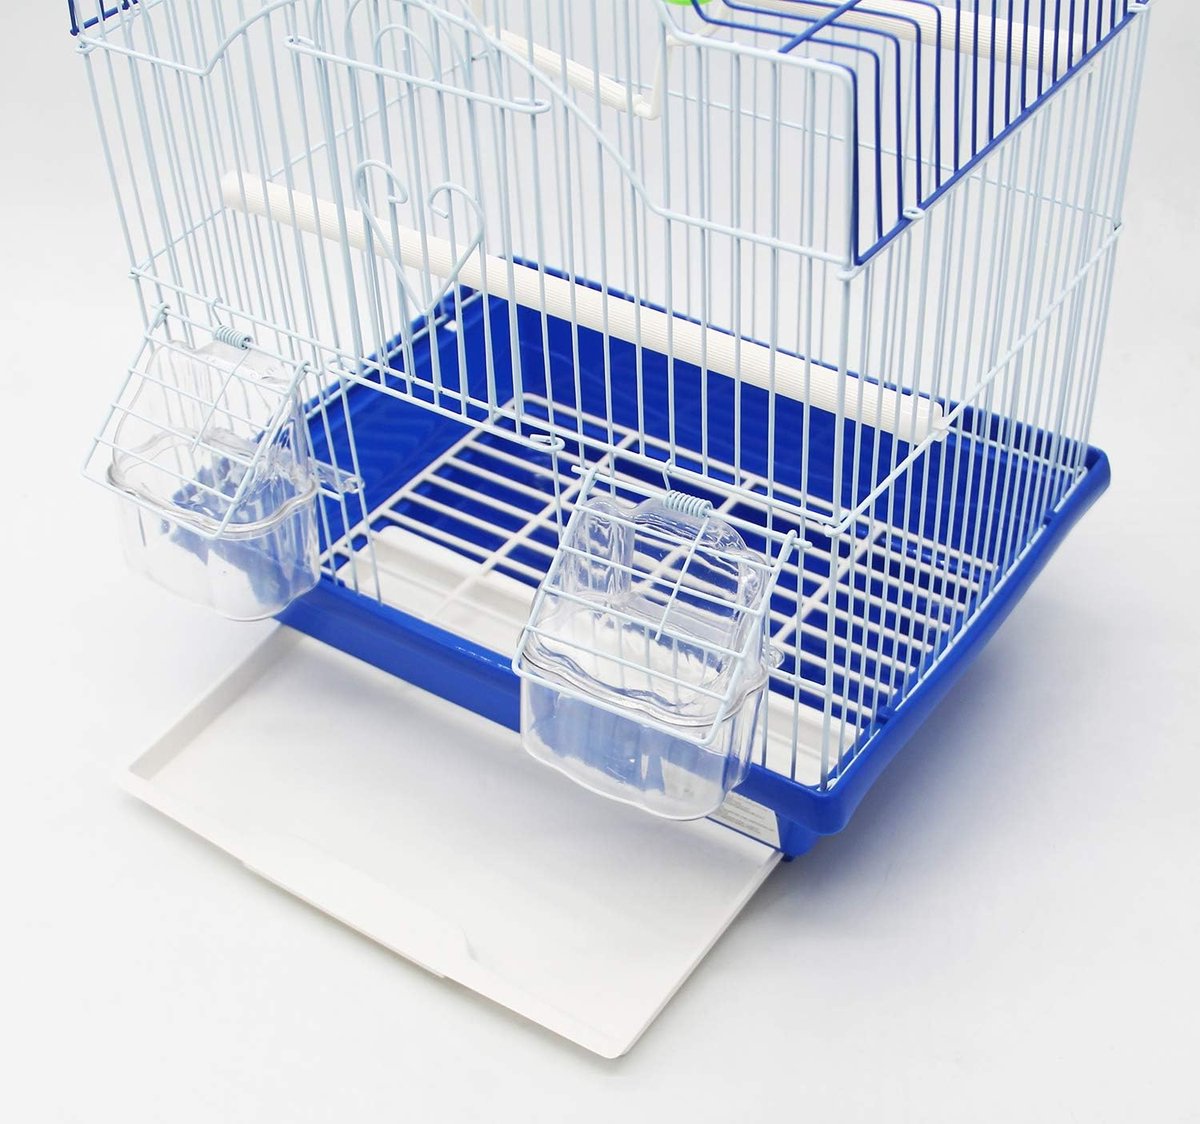 MENGDA Cage Oiseaux pour Oiseau Canaris Métal avec Mangeoire Abreuvoir Cage  d'oiseau reproducteur 75.5*45*45cm